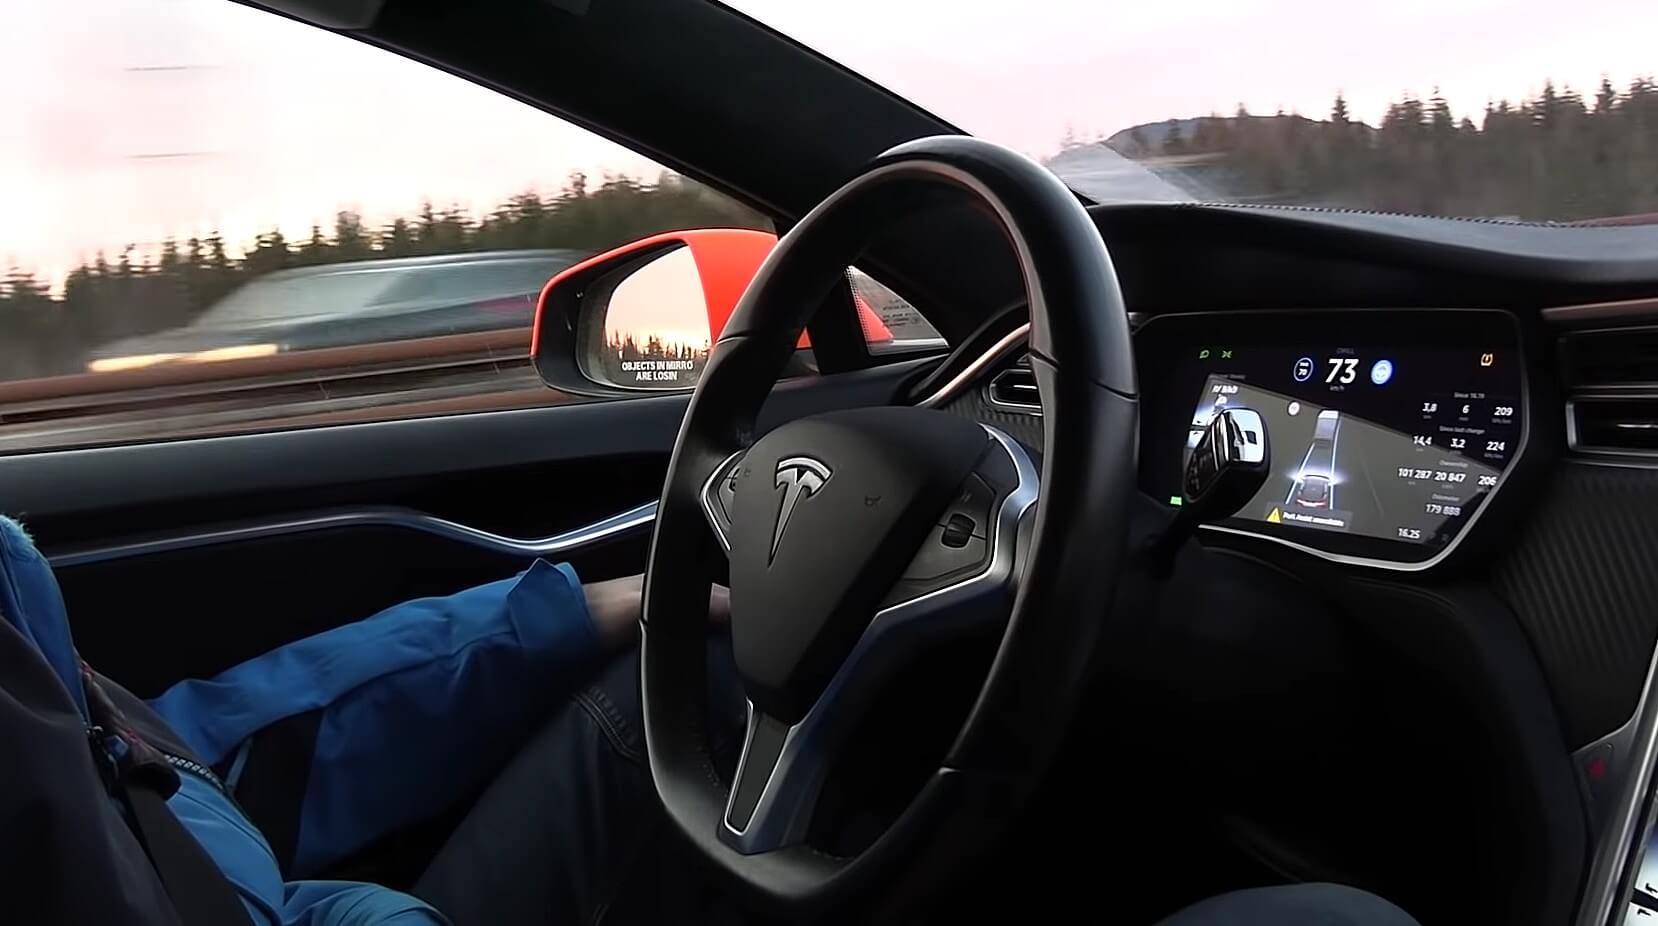 Tesla in remoto disattivato il pilota automatico sulla Model S dopo rivendita auto